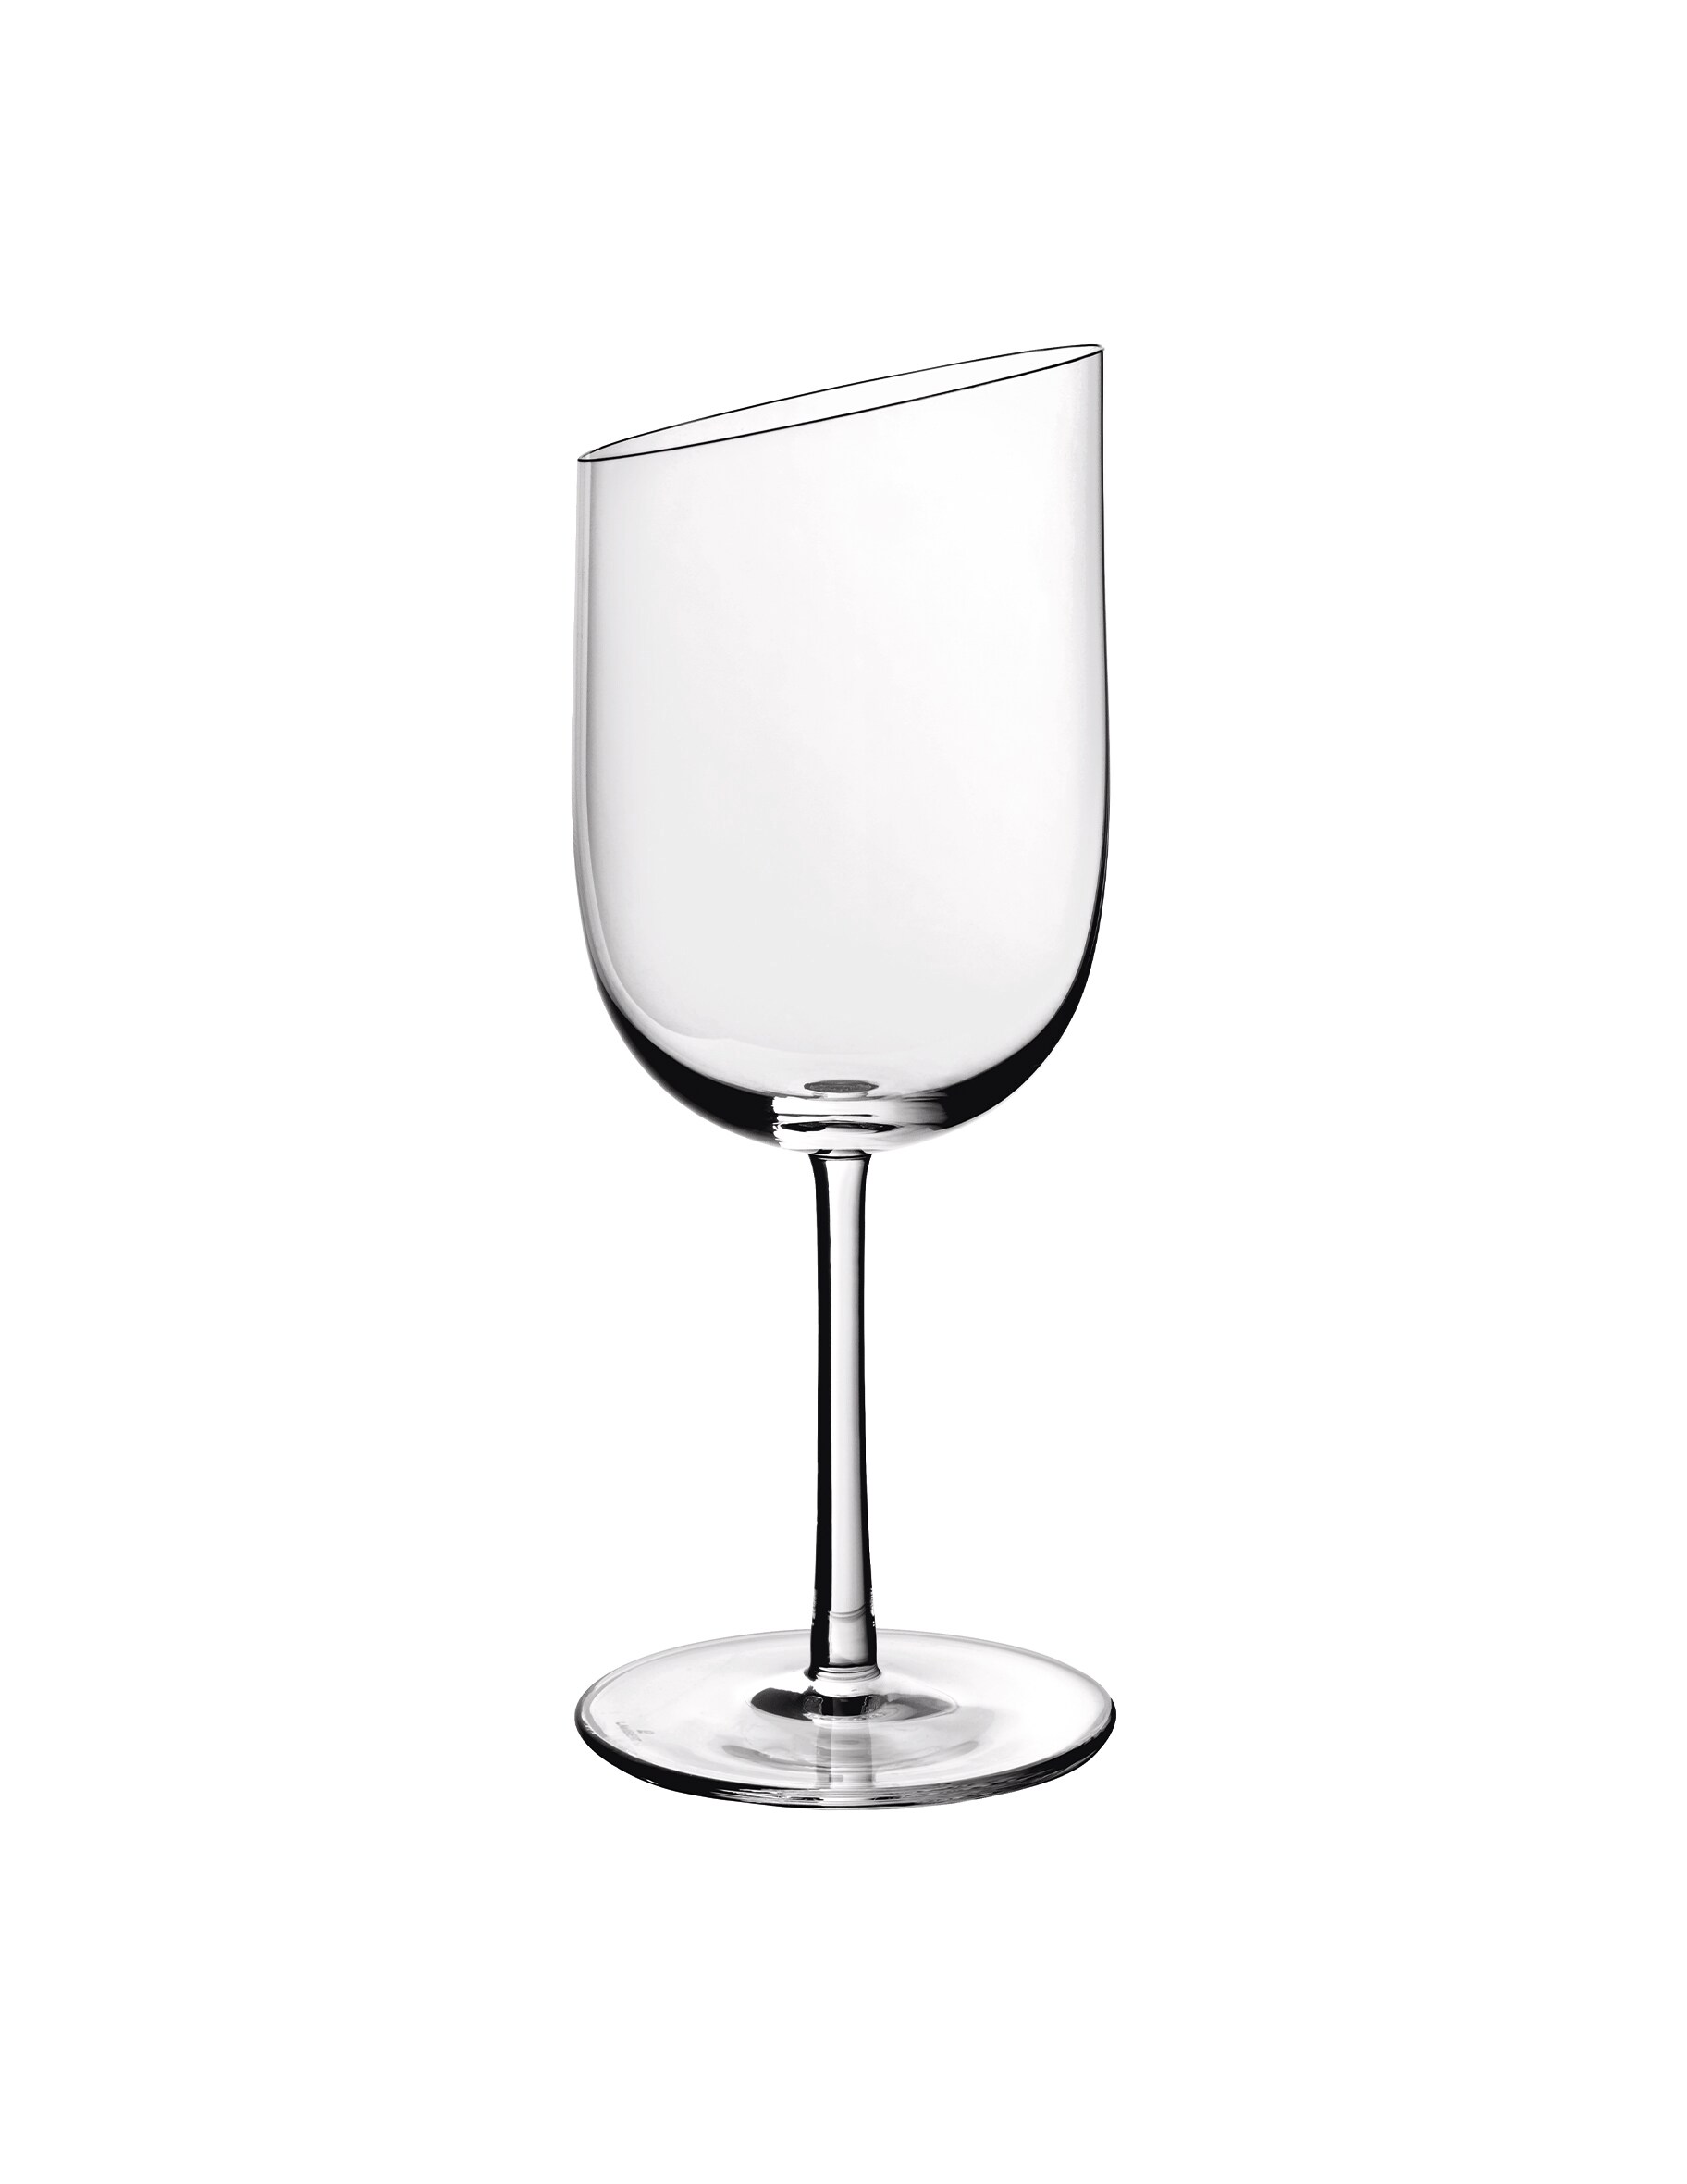 Набор бокалов для белого вина New Moon, 4 шт. Villeroy & Boch набор бокалов для красного вина new moon 4 предмета villeroy